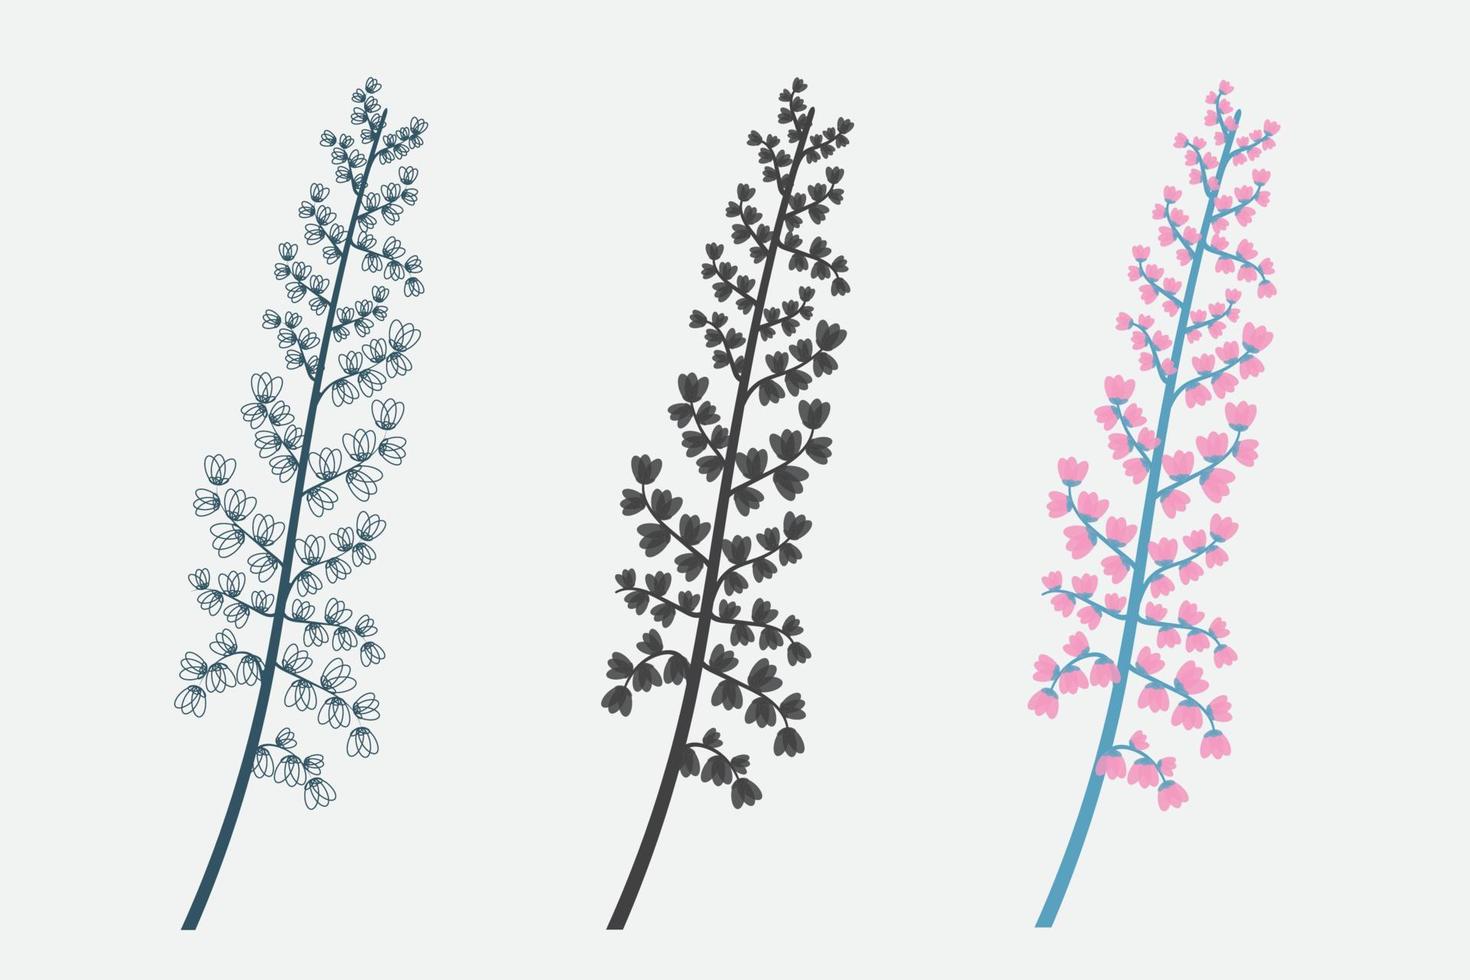 blomma illustration och linje konst vektor